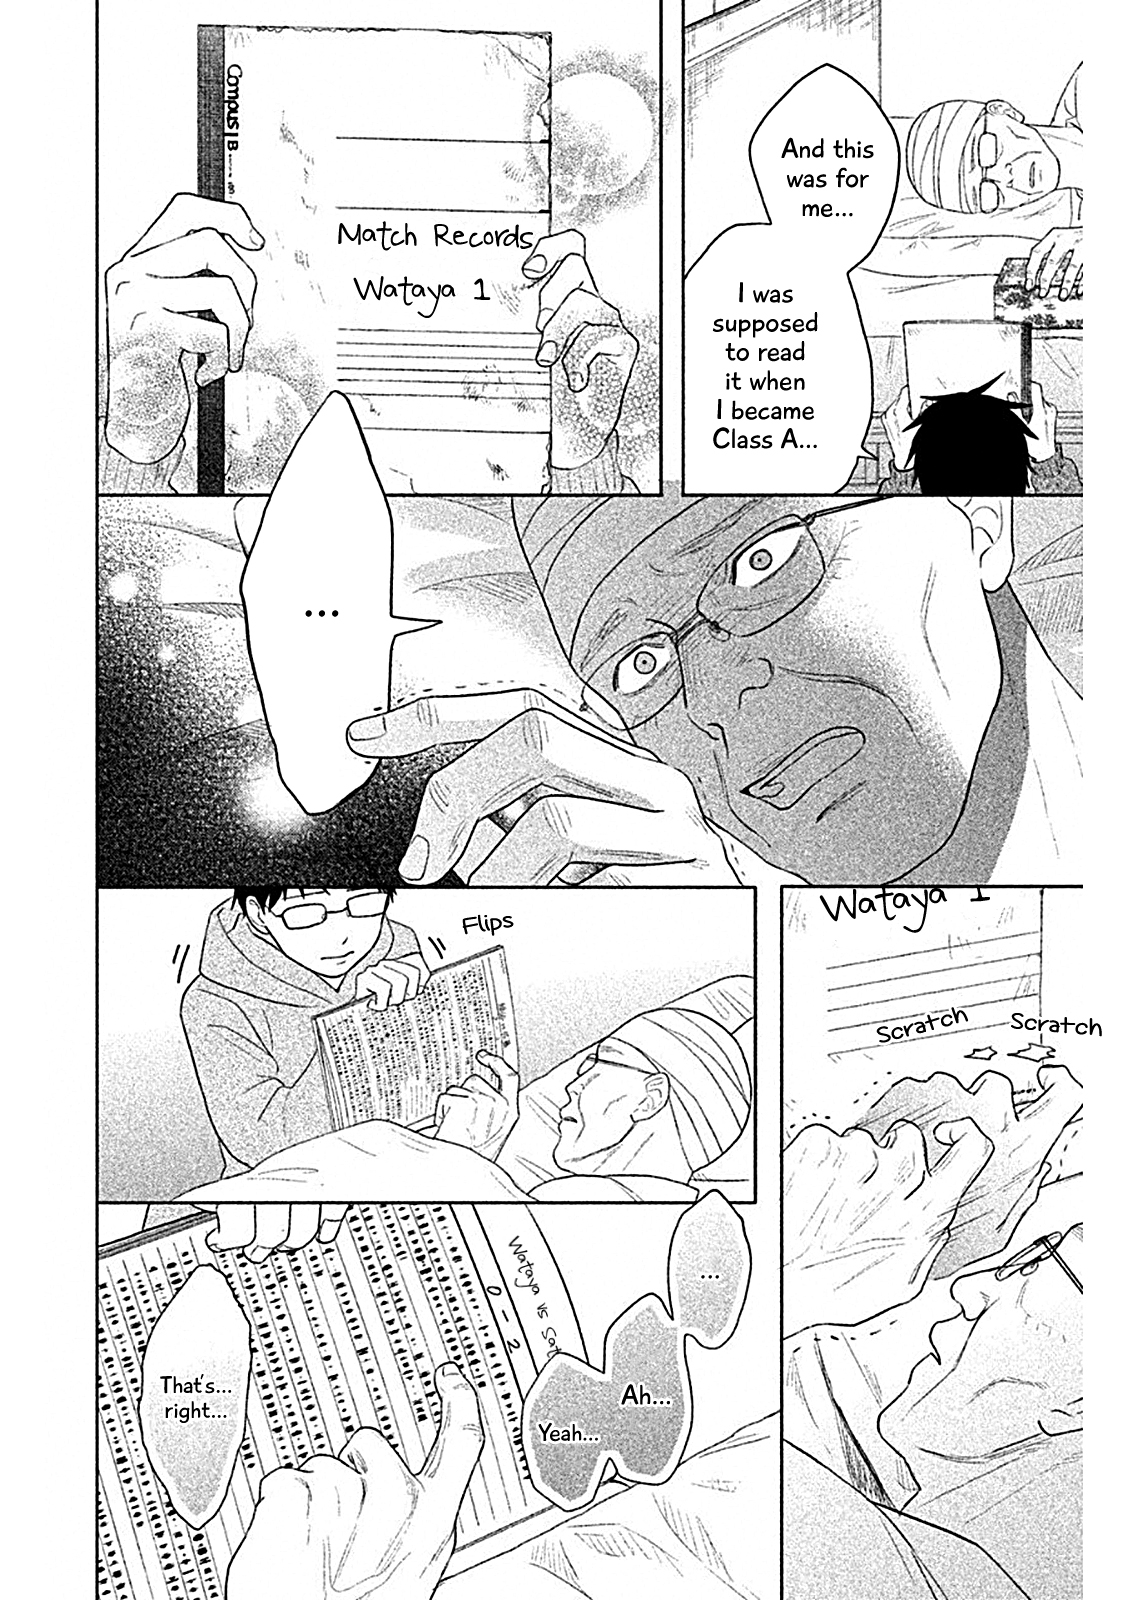 Chihayafuru: Middle School Arc Vol. 2 Ch. 7 7th Poem